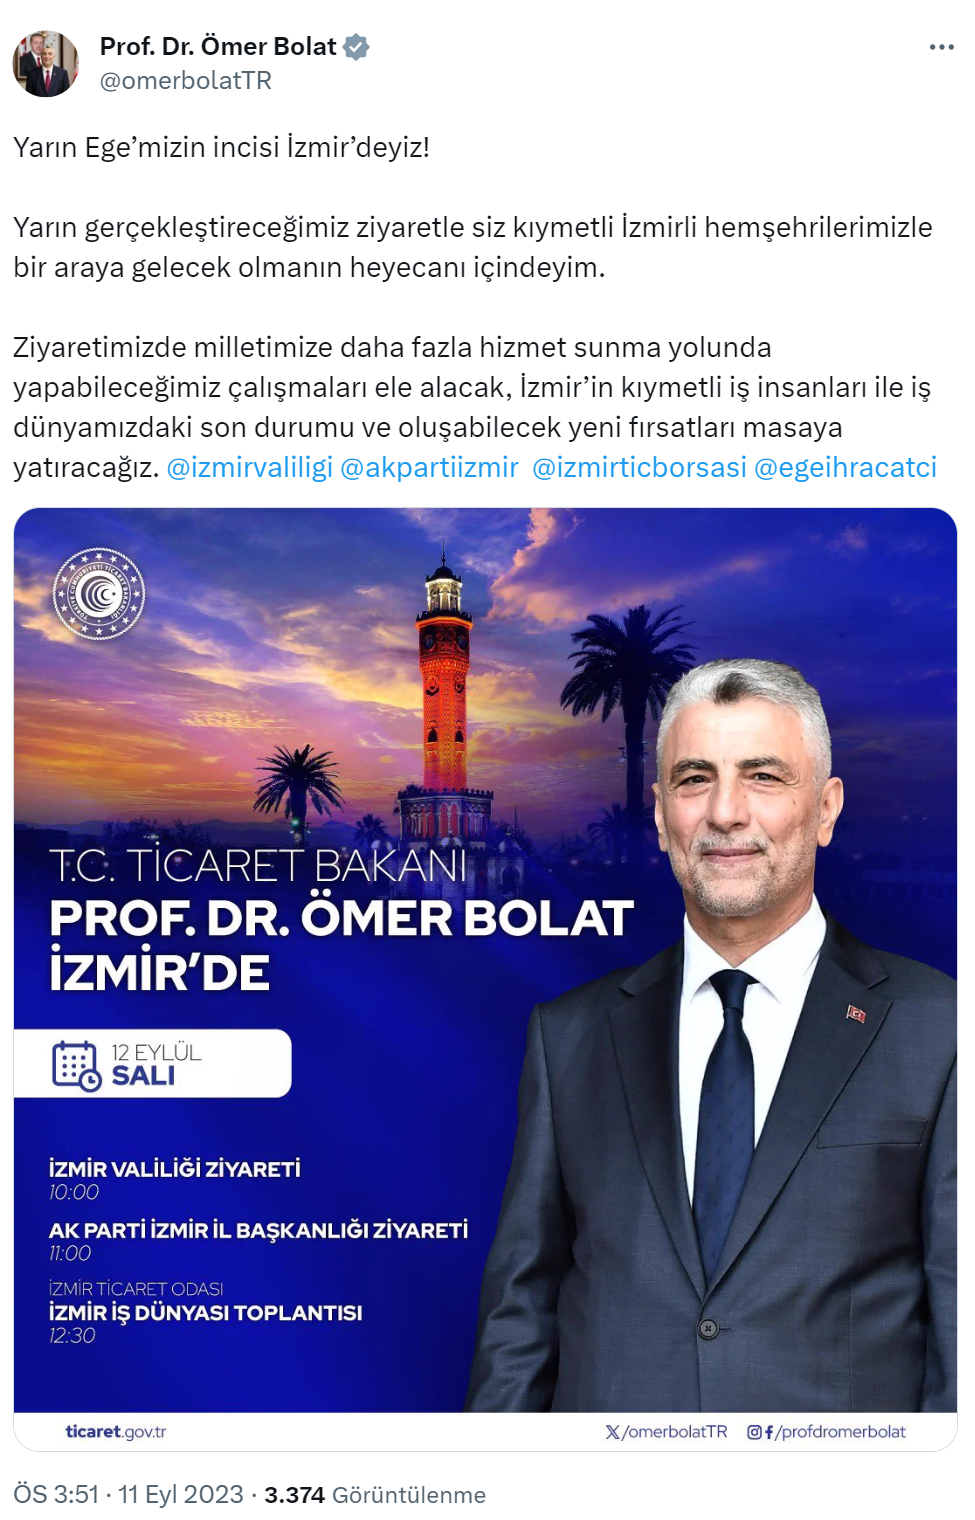 Bakan Bolat: “Yarın Ege’mizin incisi İzmir’deyiz!”